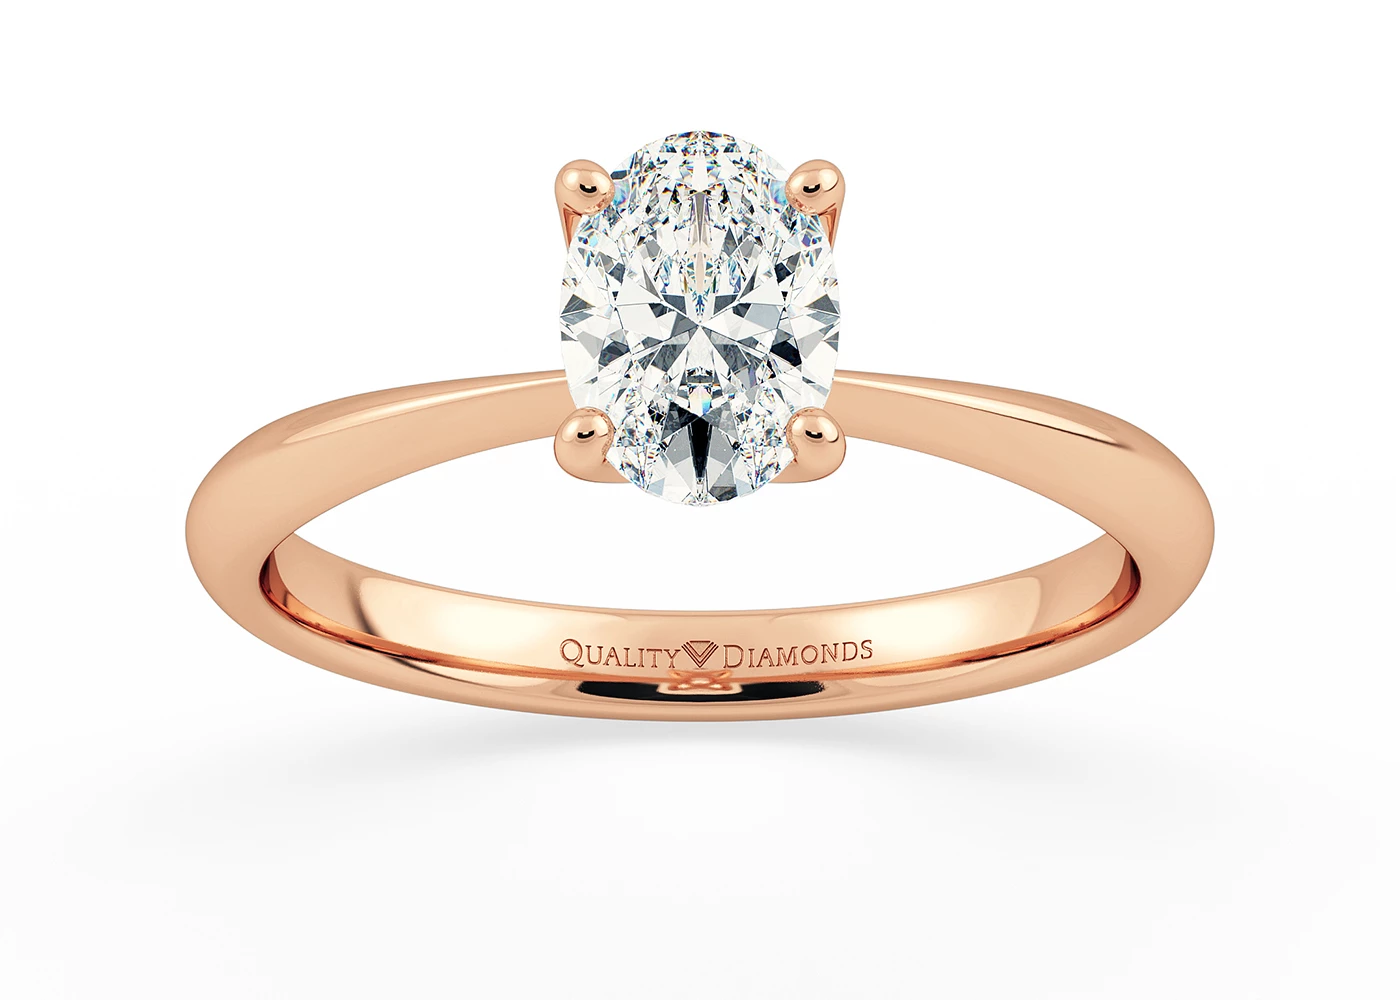 Oval Amorette Diamond Ring in 18K Rose Gold